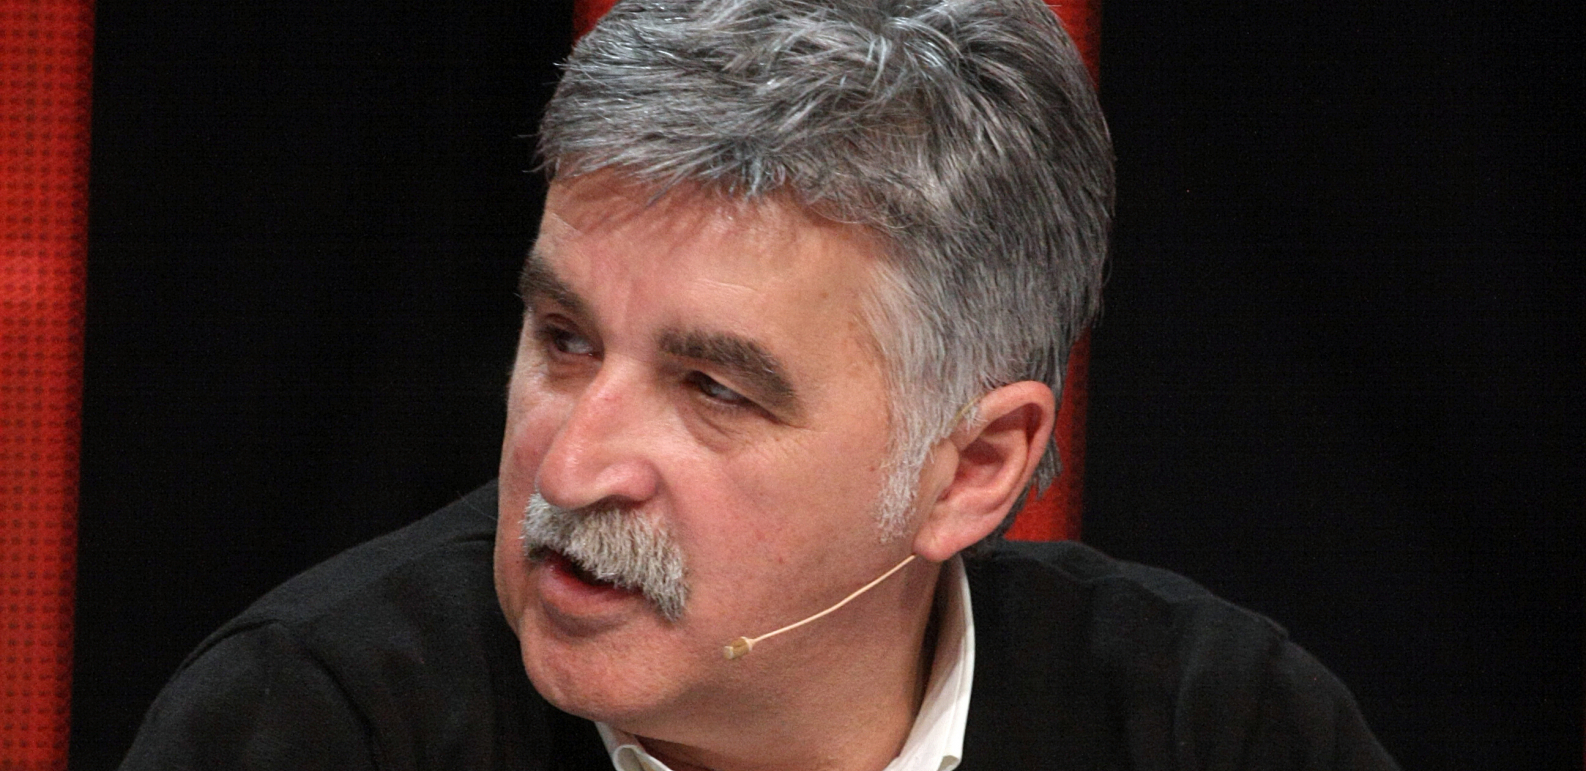 Dragan Stojković Bosanac